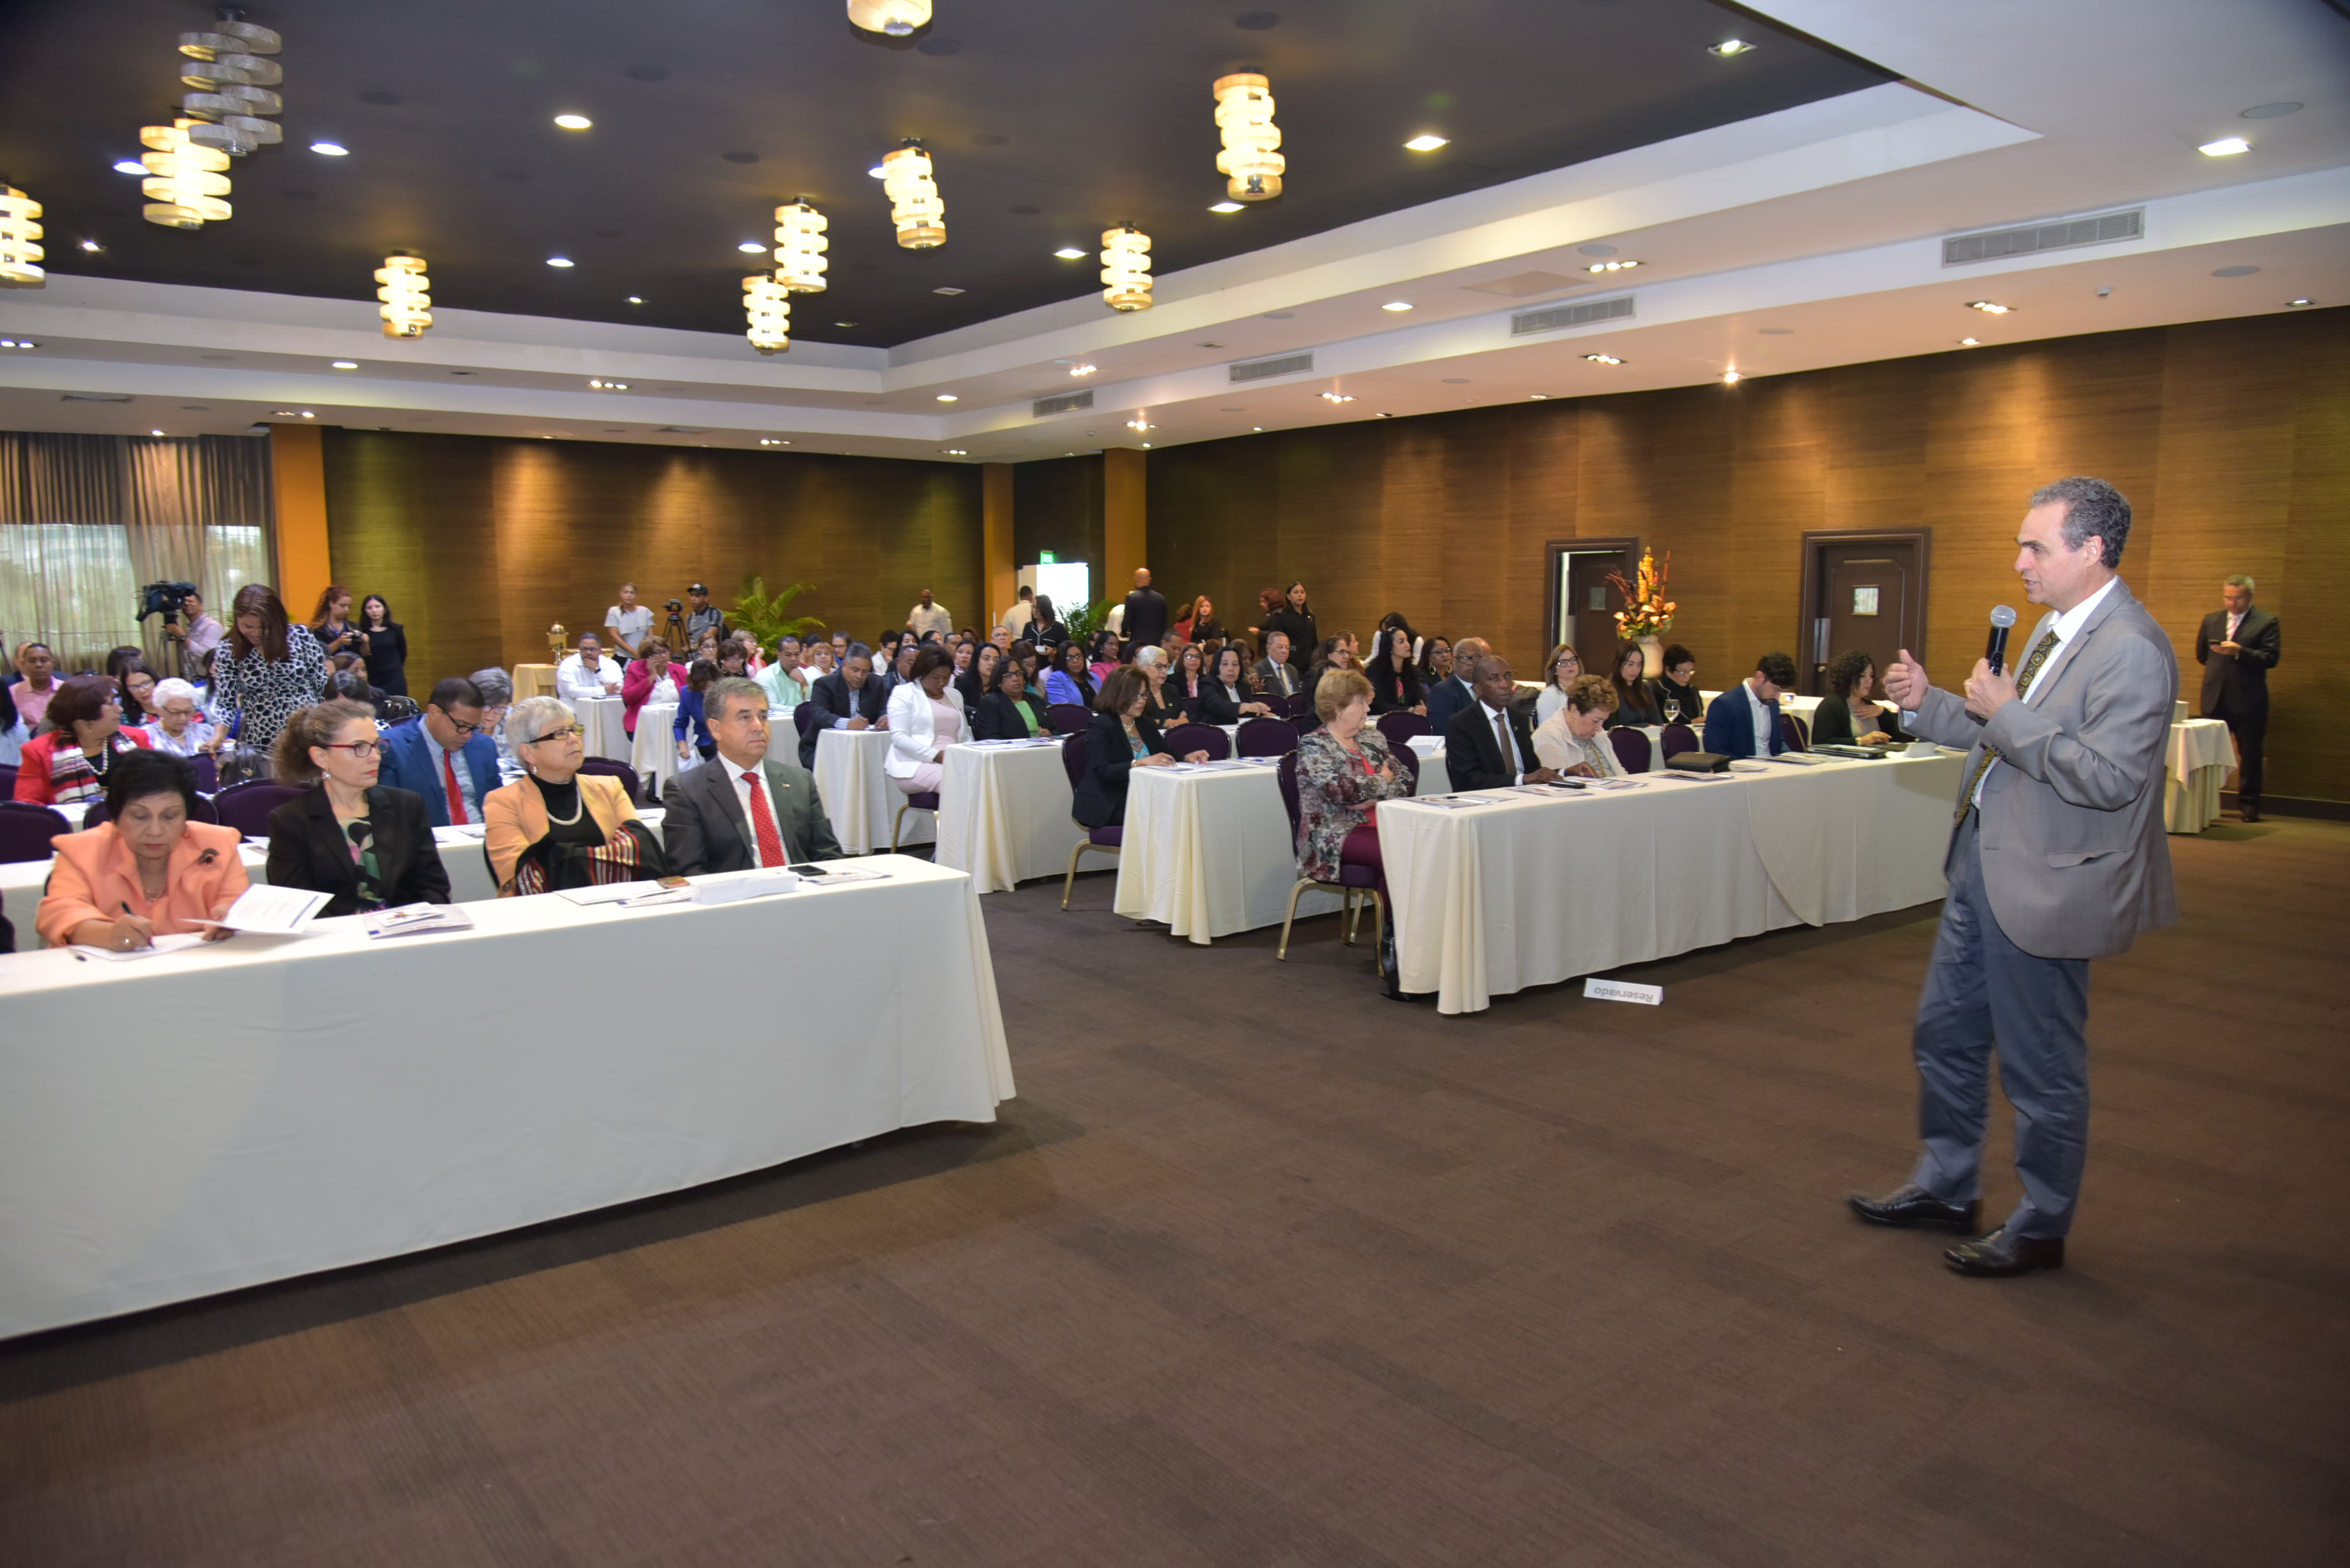  imagen Consultor chileno Jaime Veas durante conversatorio frente a los presentes en la conferencia. 